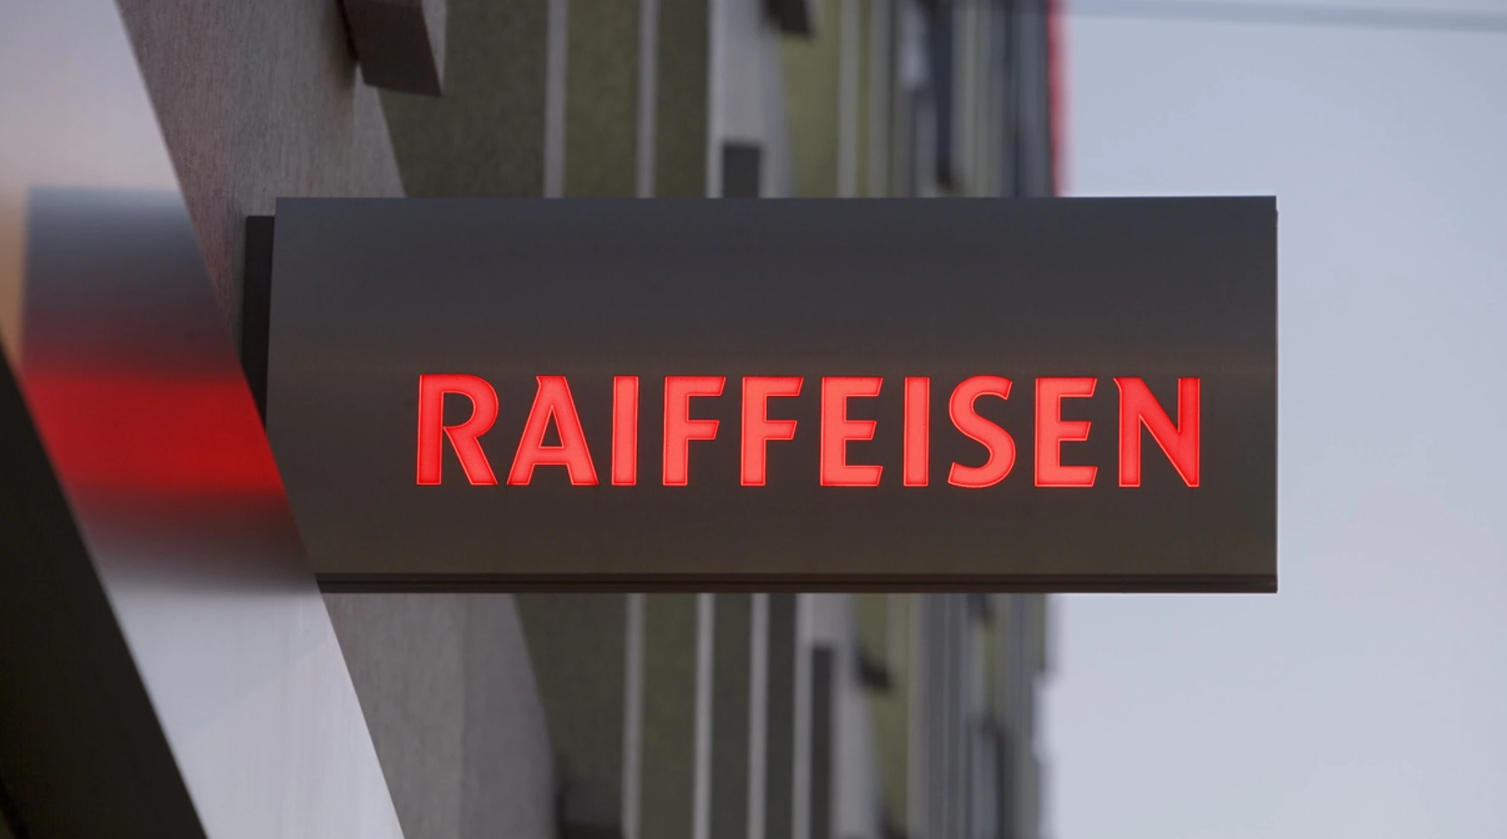 Lose bank. Raiffeisen банк Швейцарии. Swiss Raiffeisen Group. Raiffeisen Швейцария банк логотип. Raiffeisen Bank закрыл корсчета всем банкам из России, кроме своей "Дочки".